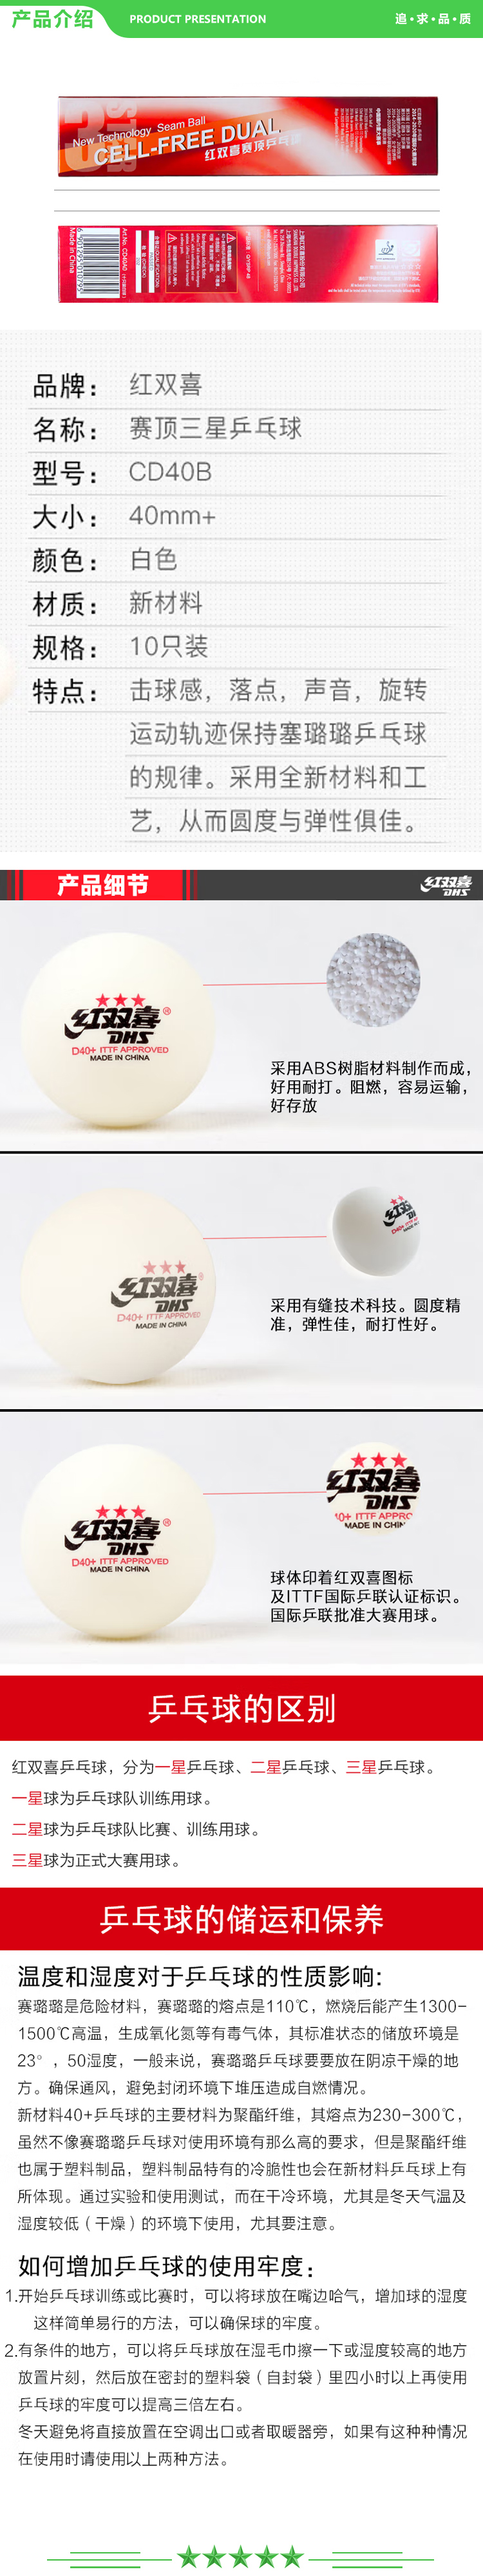 红双喜 DHS 乒乓球 赛顶三星白 比赛球ABS新材料40+白色（10只装） .jpg